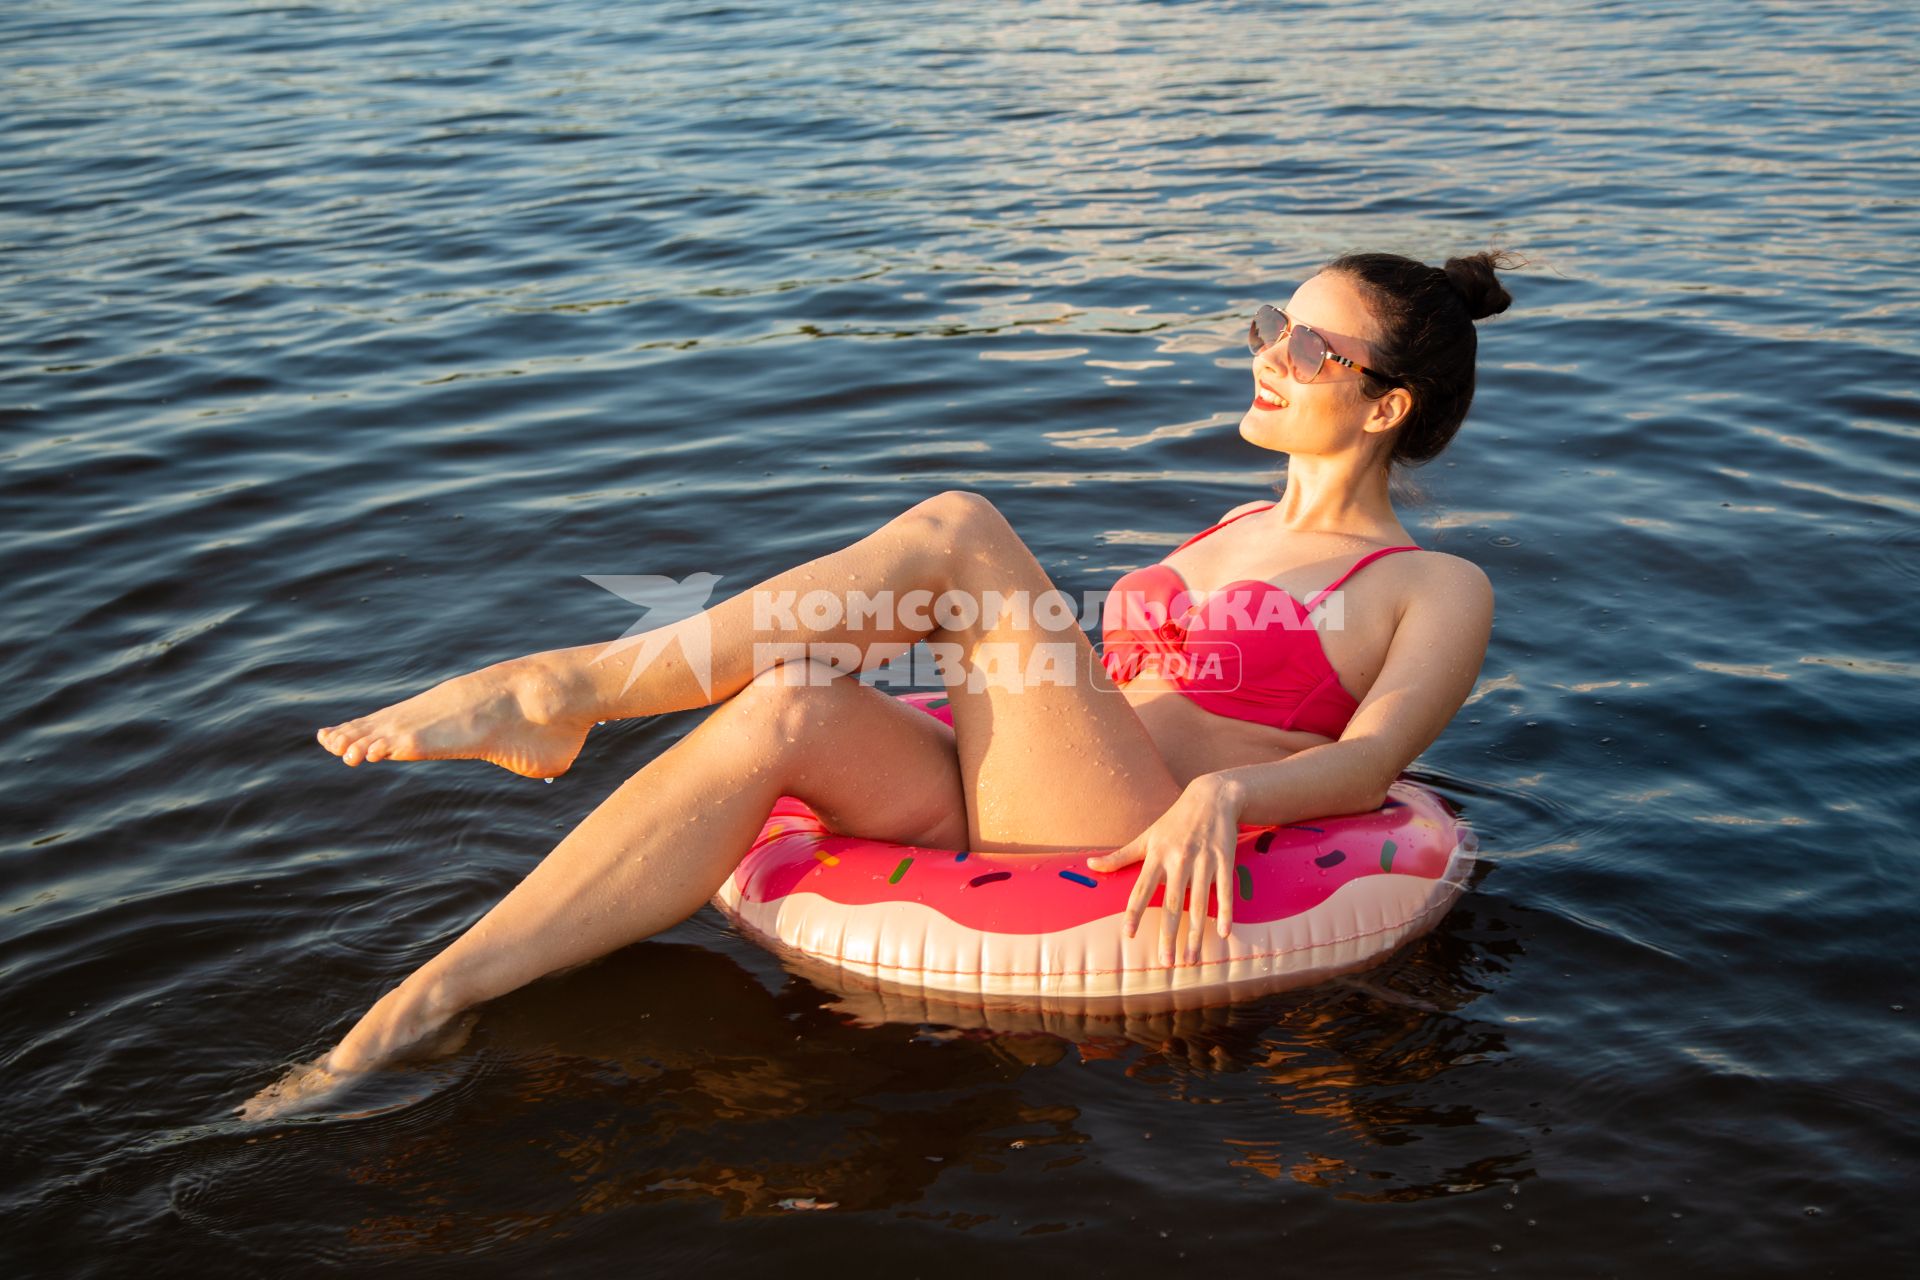 Москва. Девушка плавает на надувном круге в виде пончика на пляже Серебряный бор № 2.